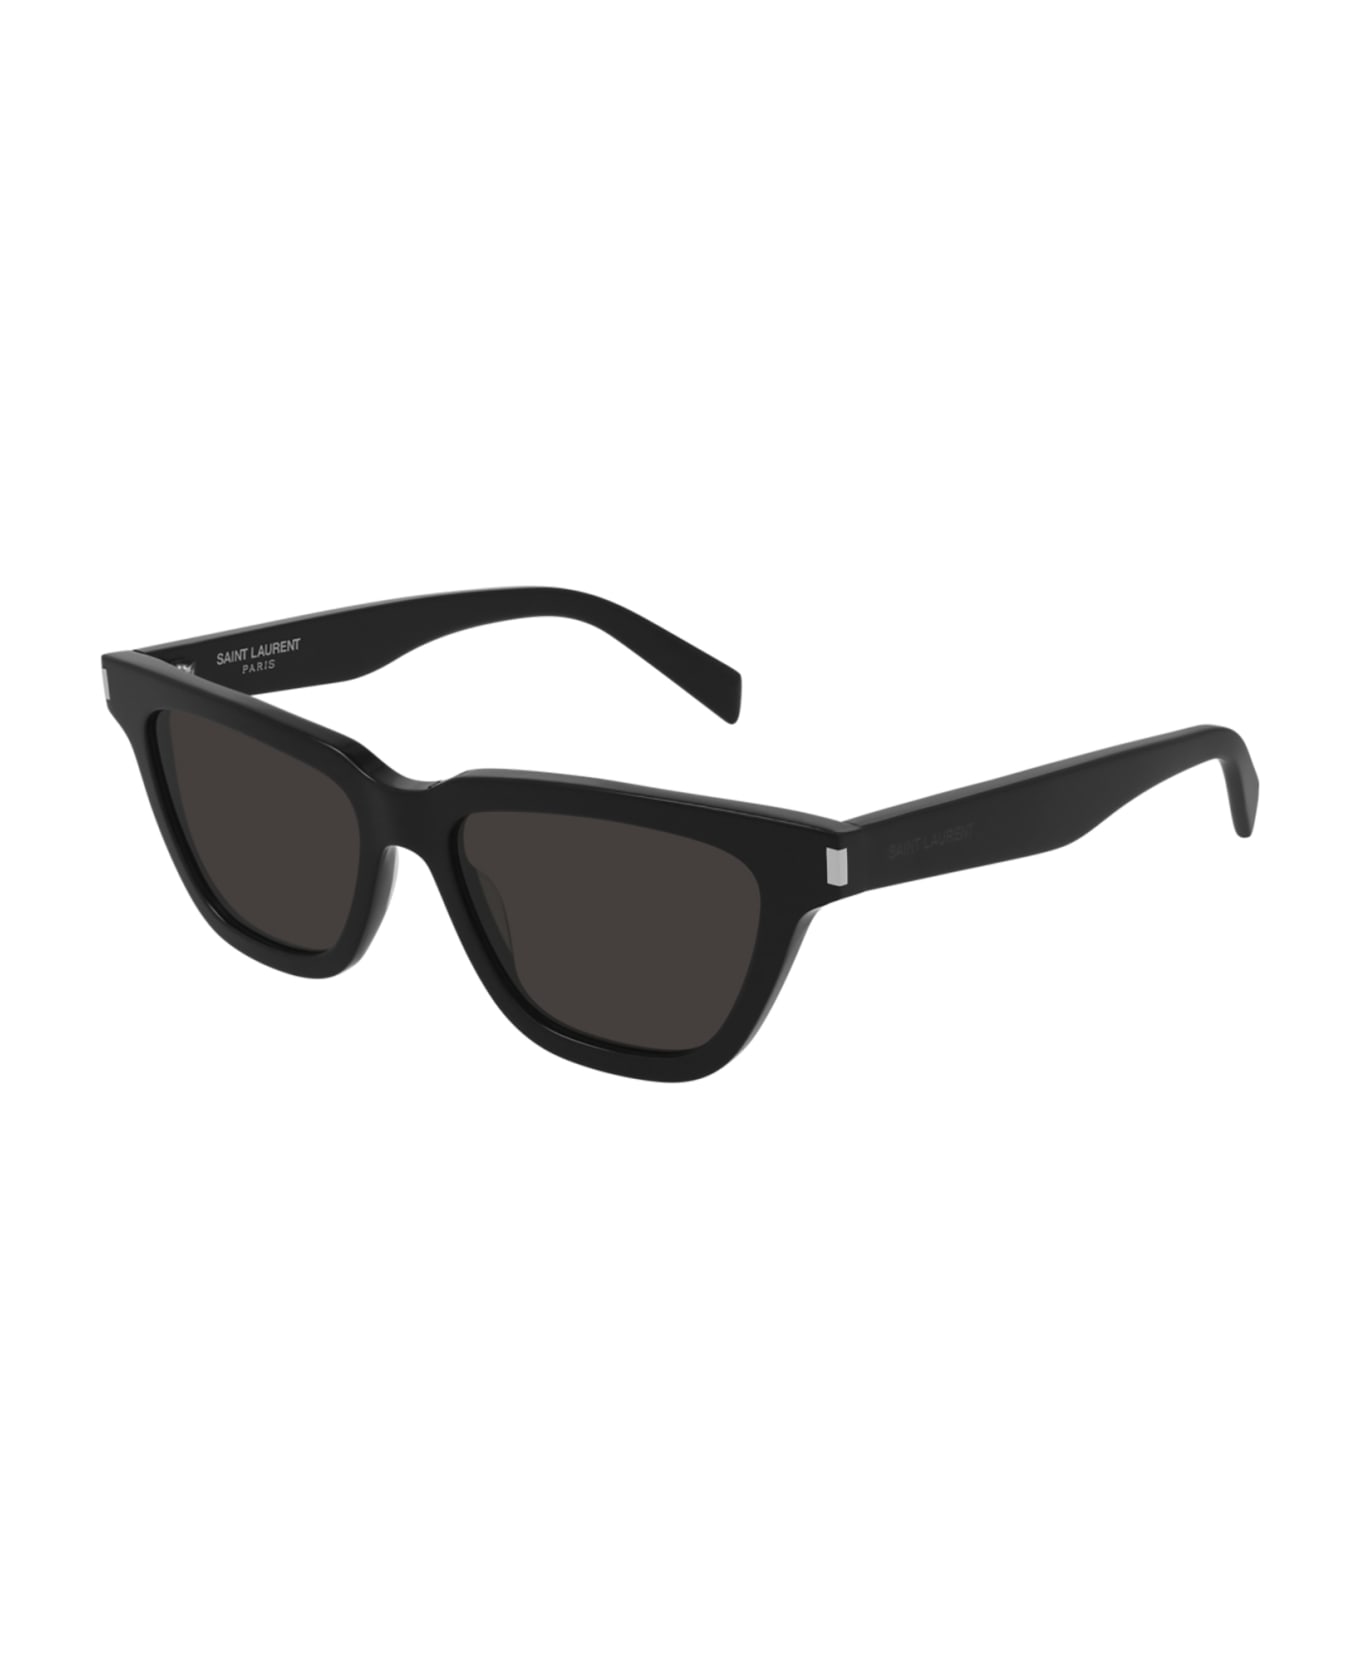 Saint Laurent Eyewear SL 462 SULPICE Sunglasses - Black Black Black